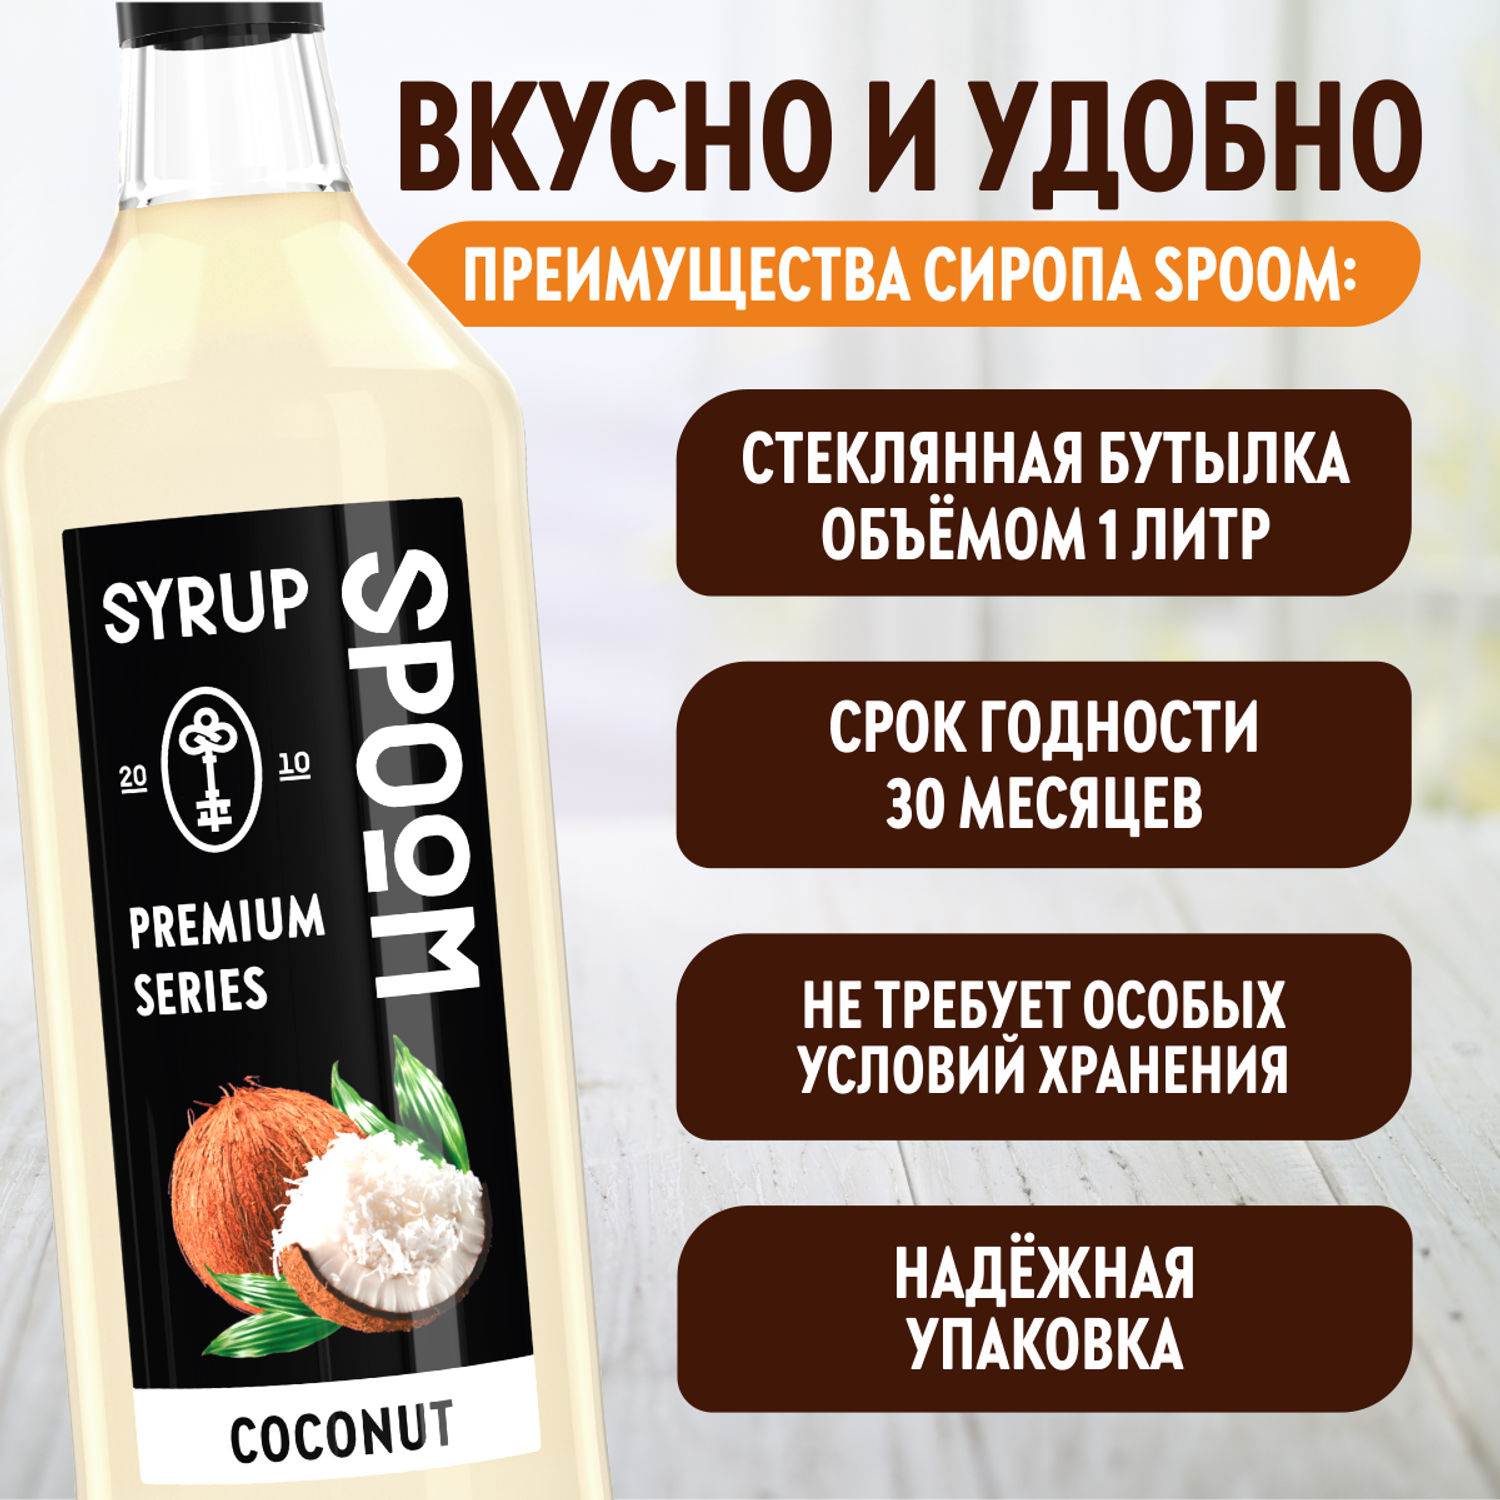 Сироп SPOOM Кокос 1л для кофе коктейлей и десертов - фото 4